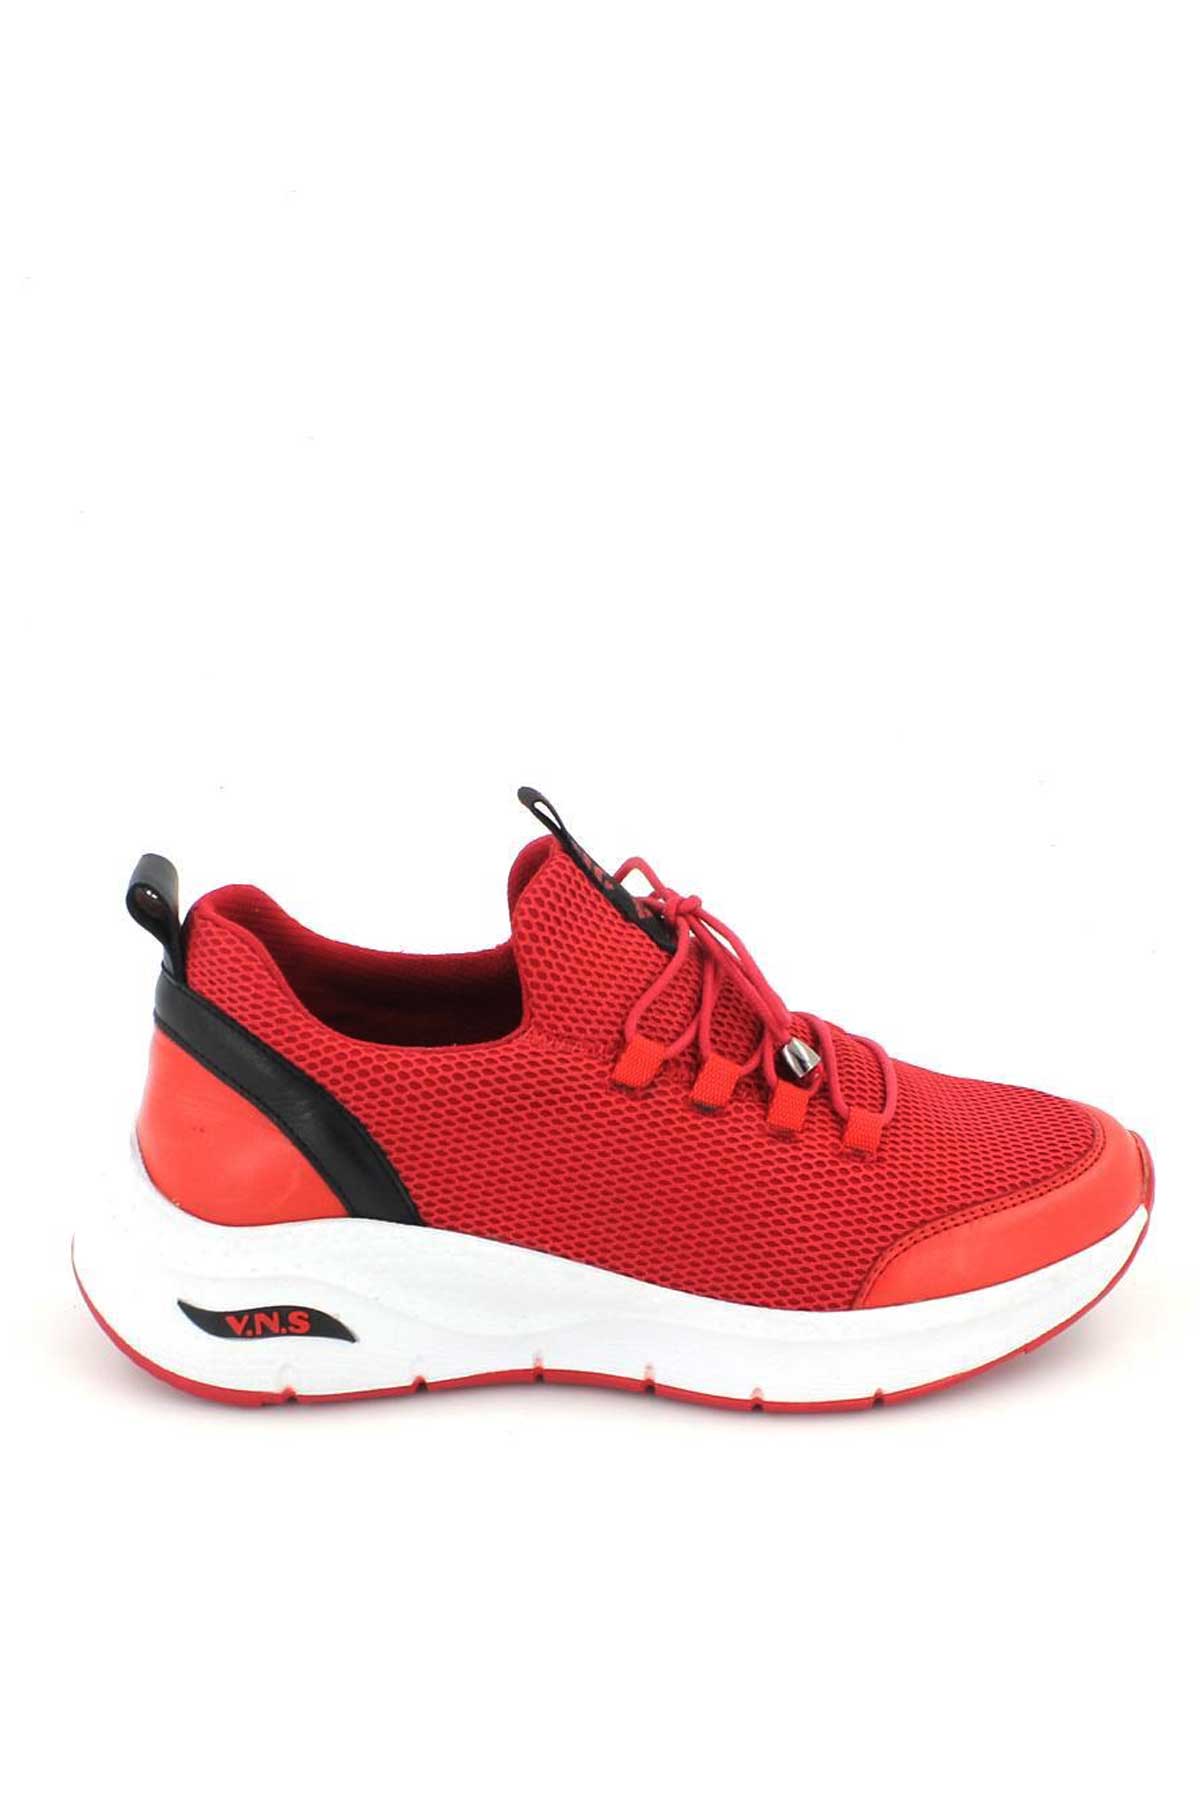 Kadın Sneakers Kırmızı 2115004Y - Thumbnail